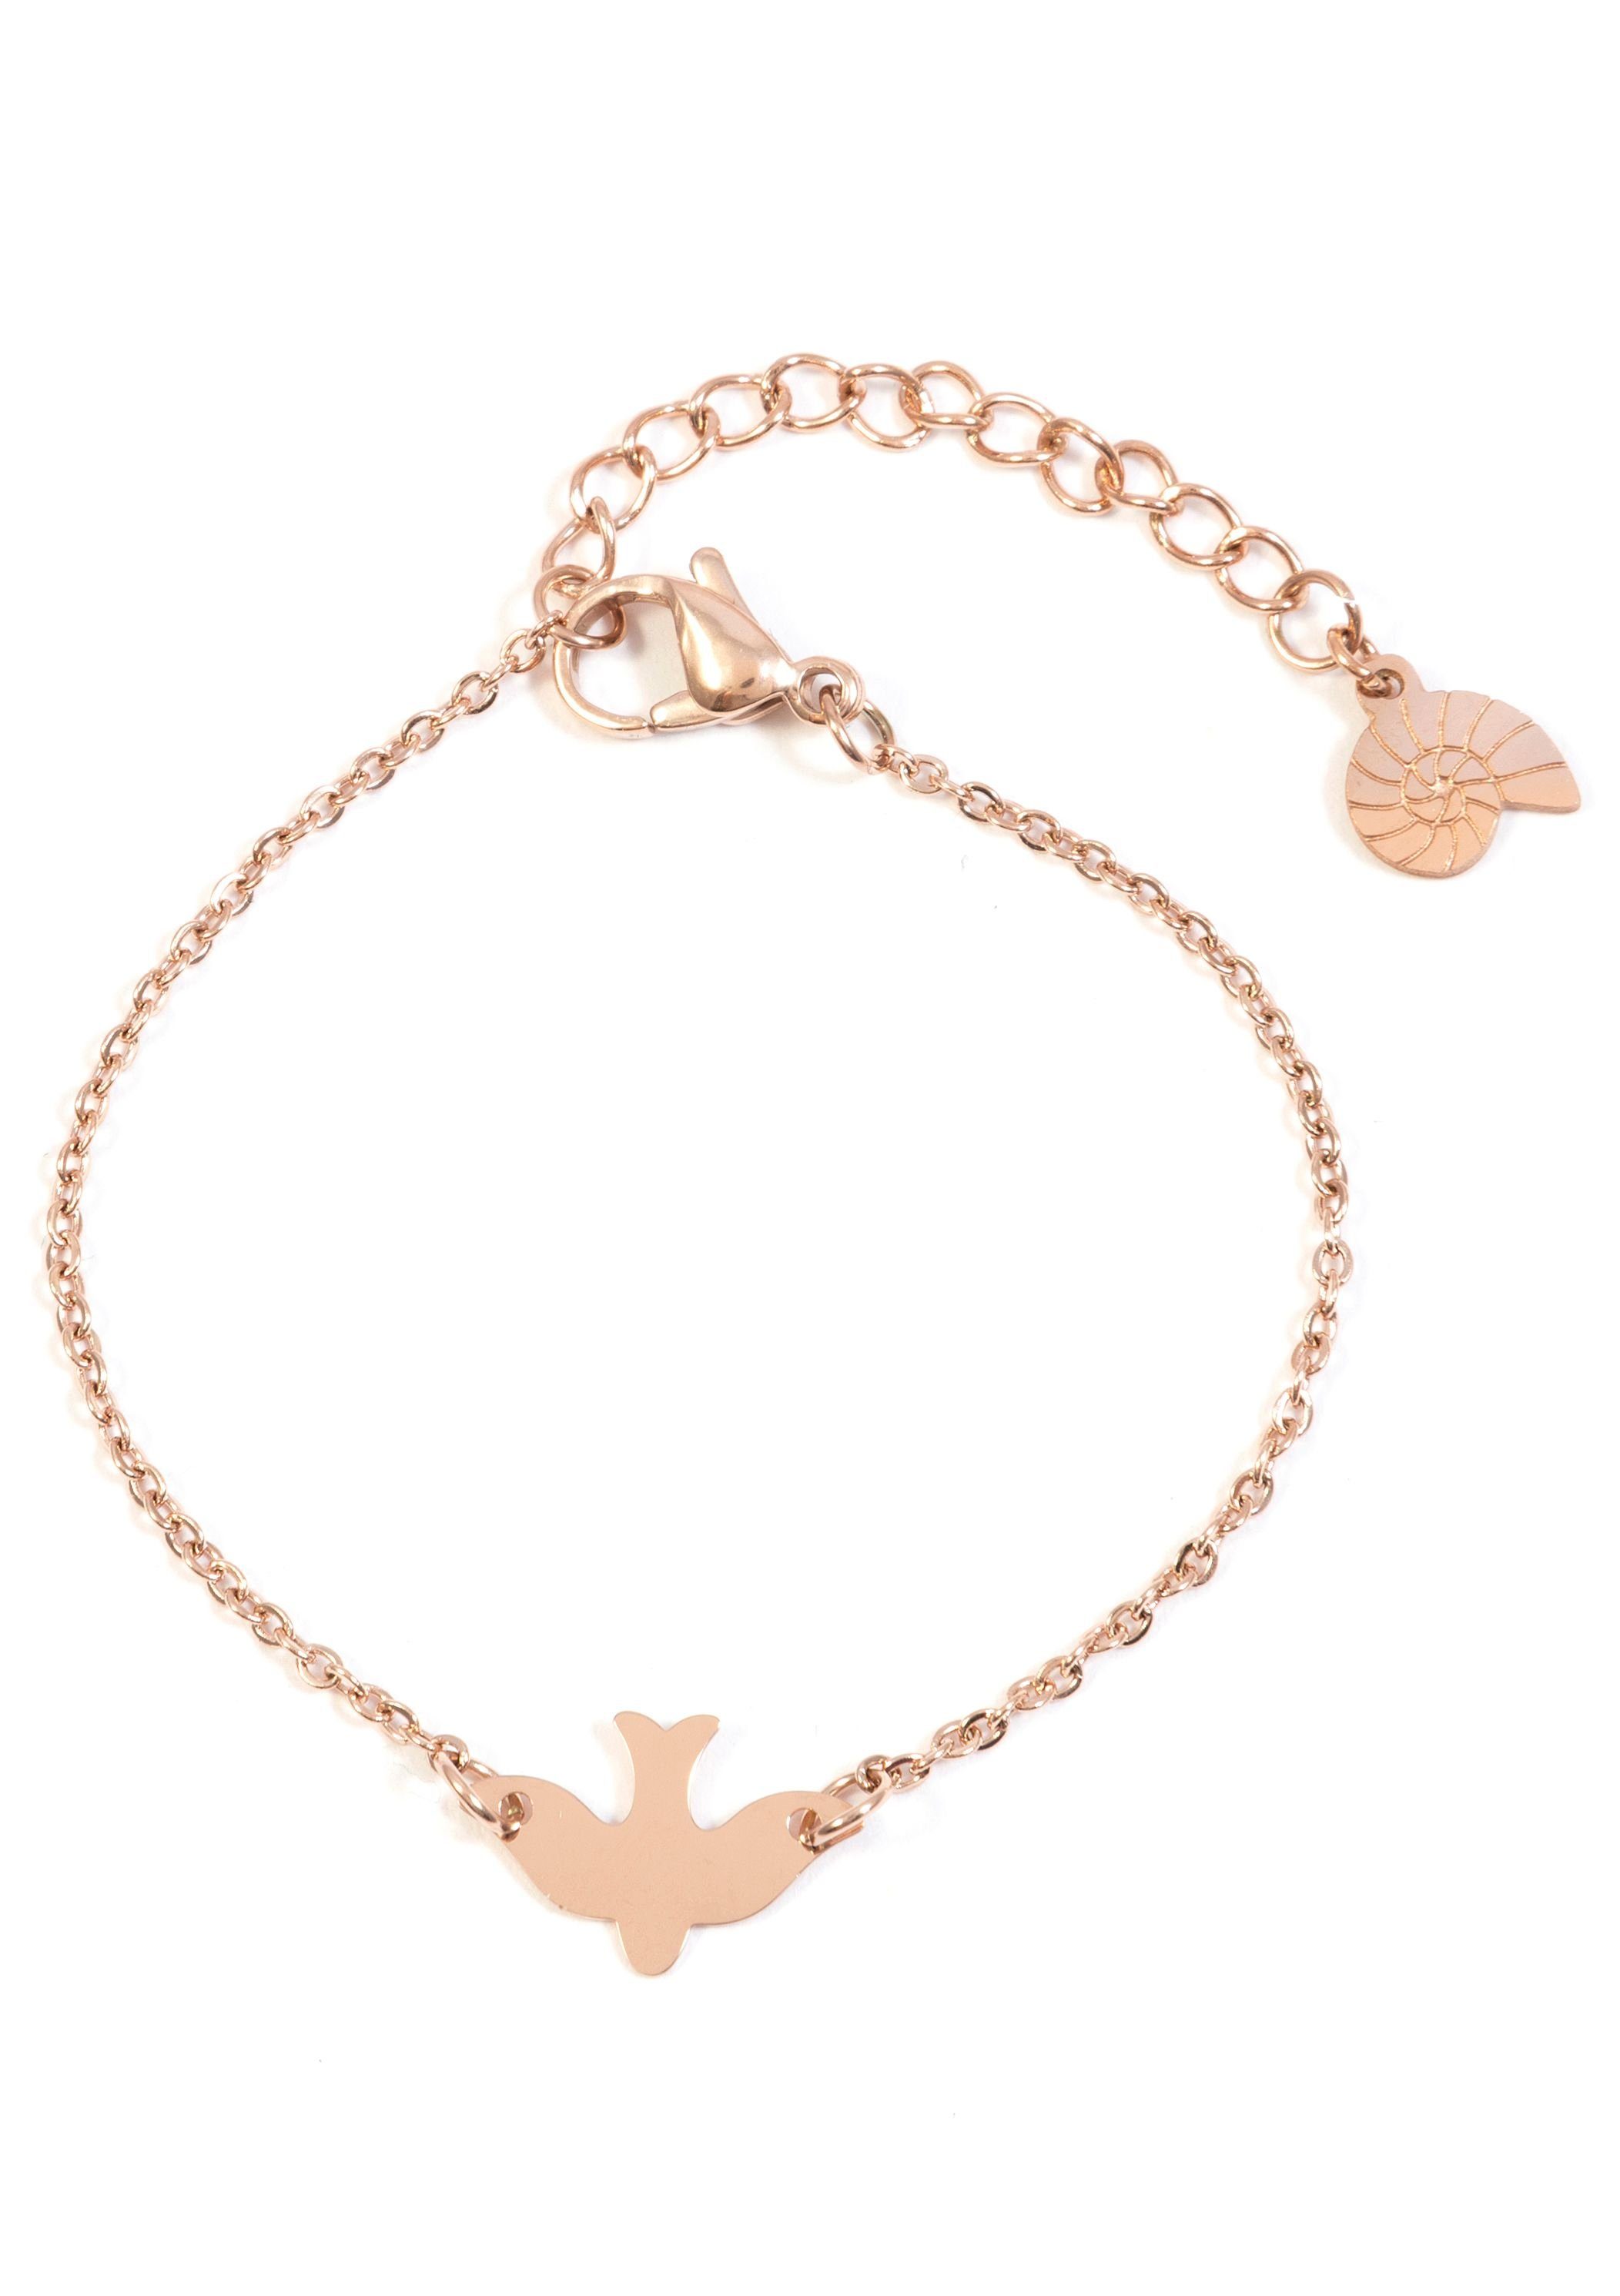 Hey Happiness Charm-Armband Filigranes Schwalbe Anhänger Armband, Armkette  mit fliegendem Vogel aus Edelstahl für Damen, wasserfest